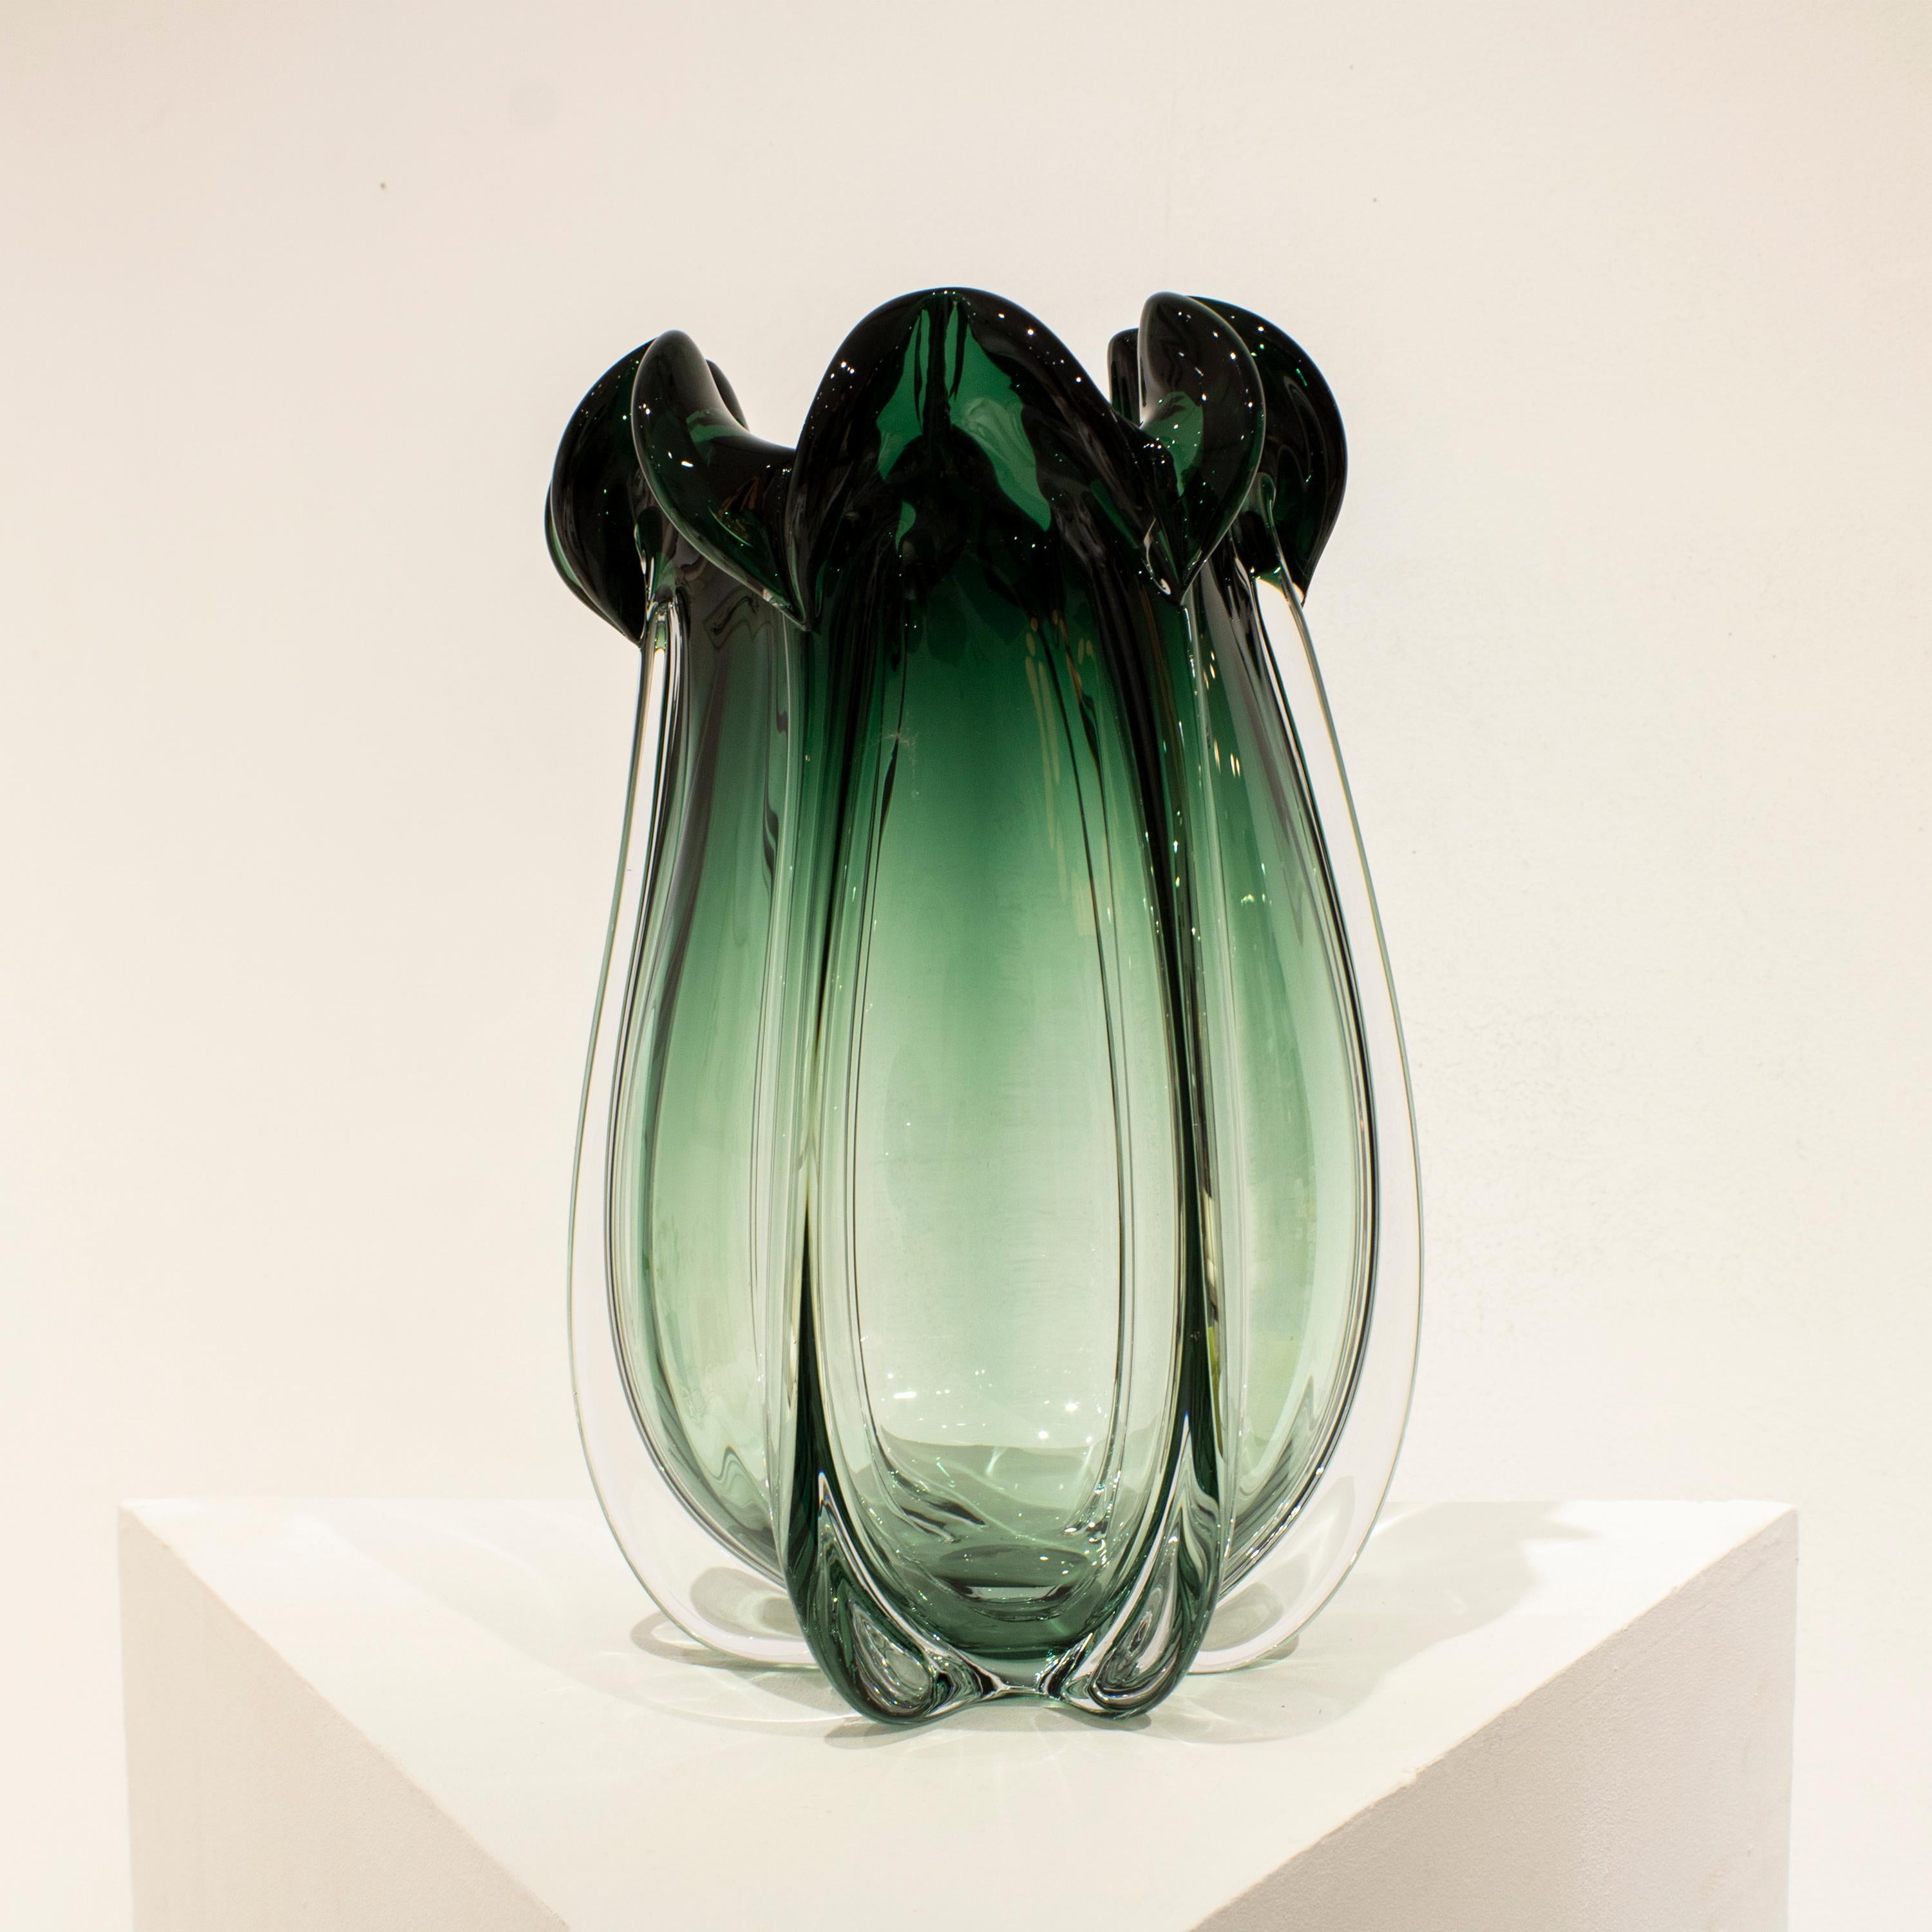 Vase aus mundgeblasenem, grünem, halbtransparentem italienischem Glas mit organischen, von der Natur inspirierten Formen. 